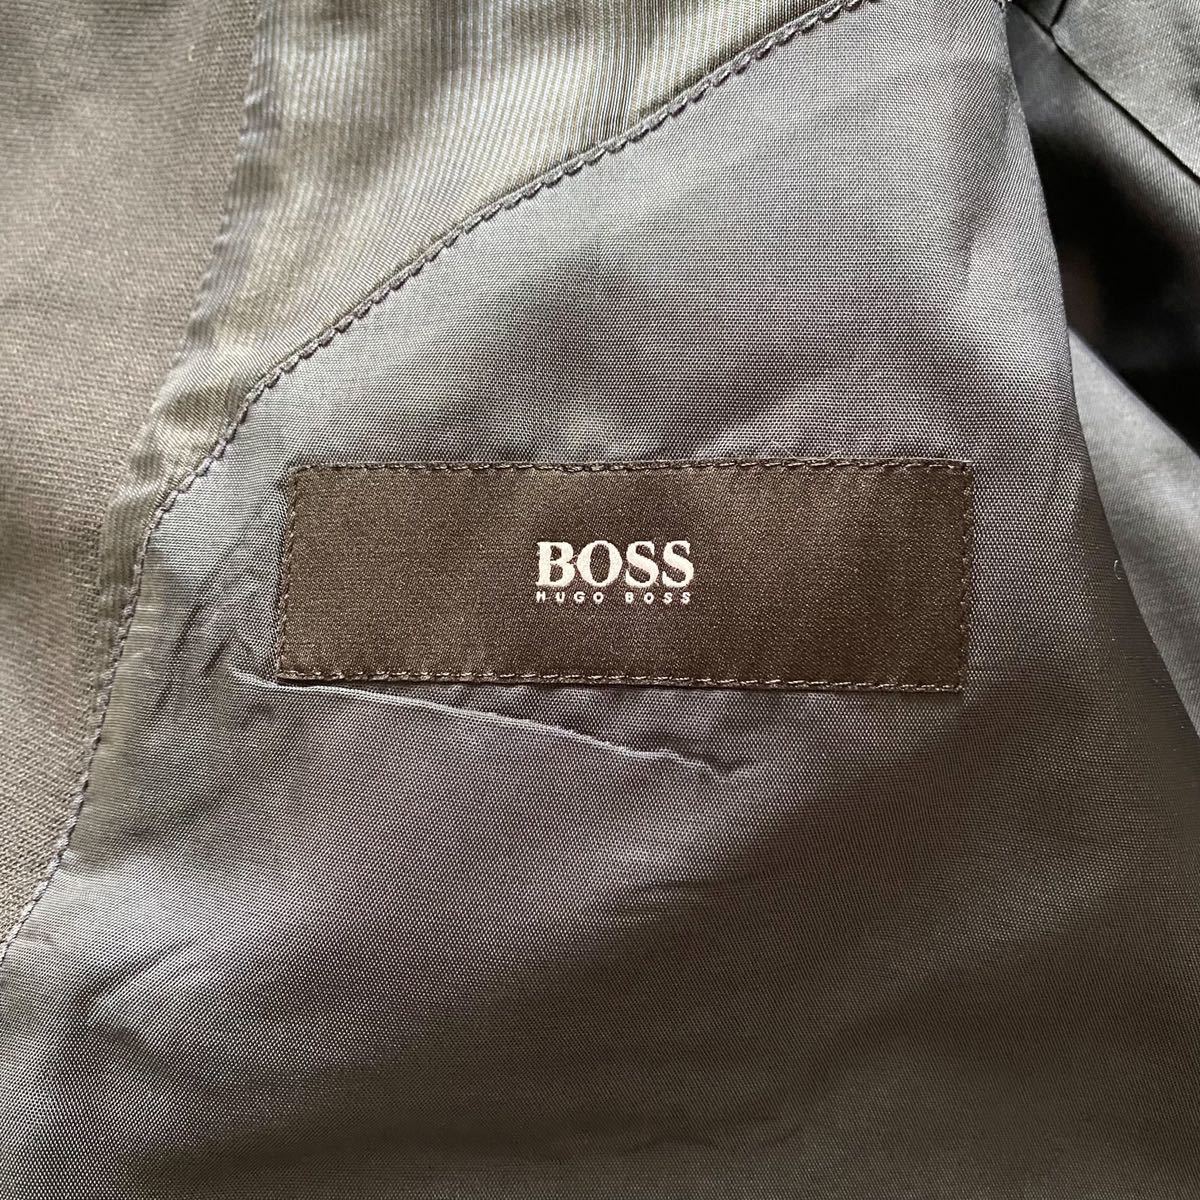 ヒューゴボス【圧巻の3ピース】HUGO BOSS シングルスーツ 黒 ブラック 48 L〜XL位 ラムウール 羊毛 スリーピース_画像5